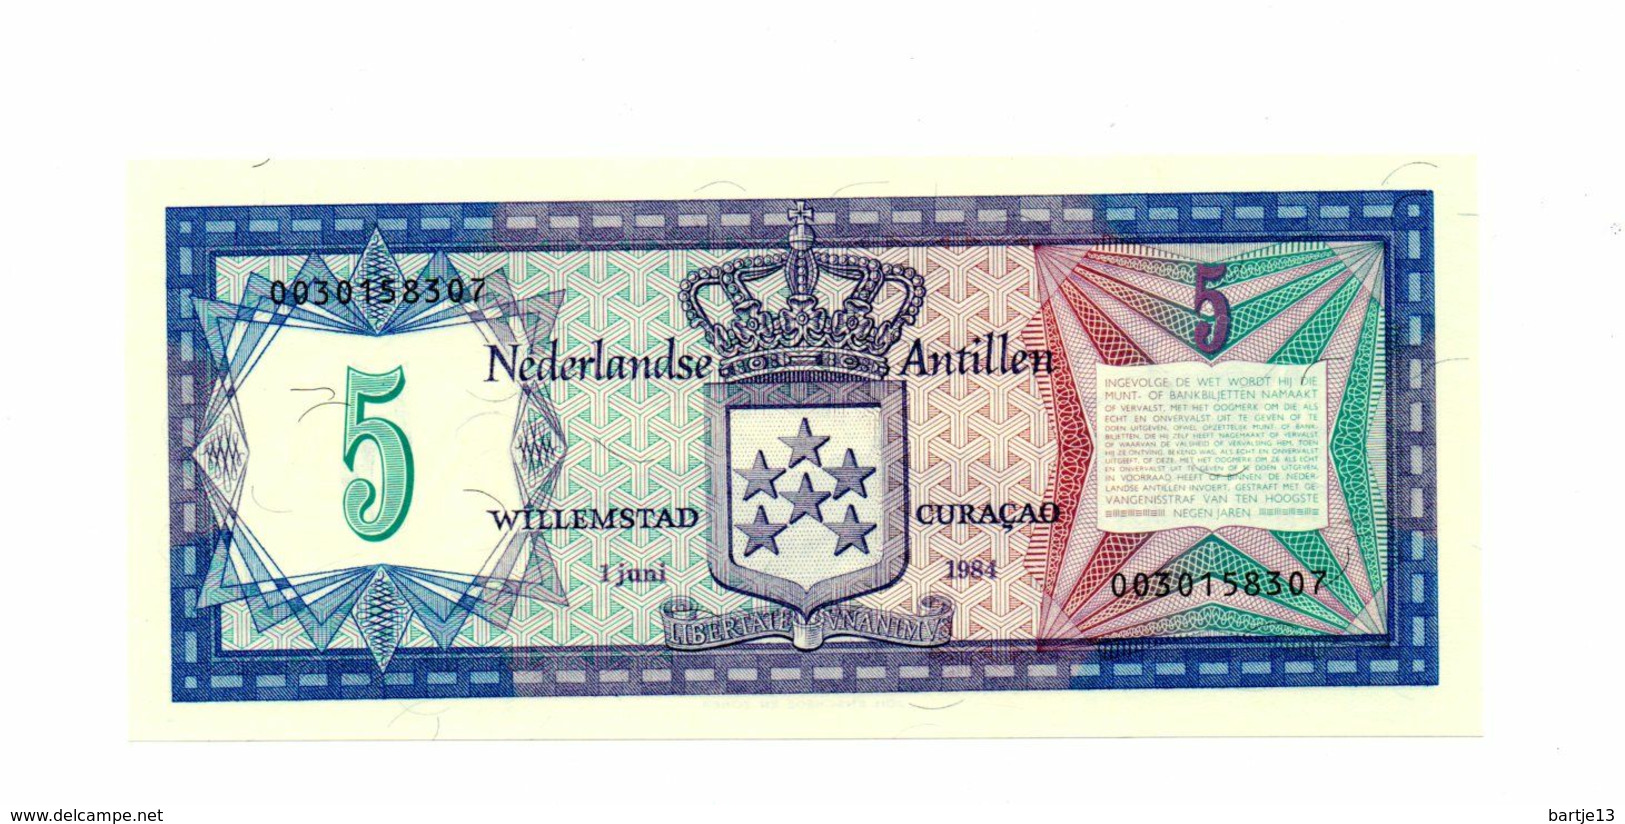 NEDERLANDSE ANTILLEN 5 GULDEN 1 JUNI 1984 FDC - Niederländische Antillen (...-1986)